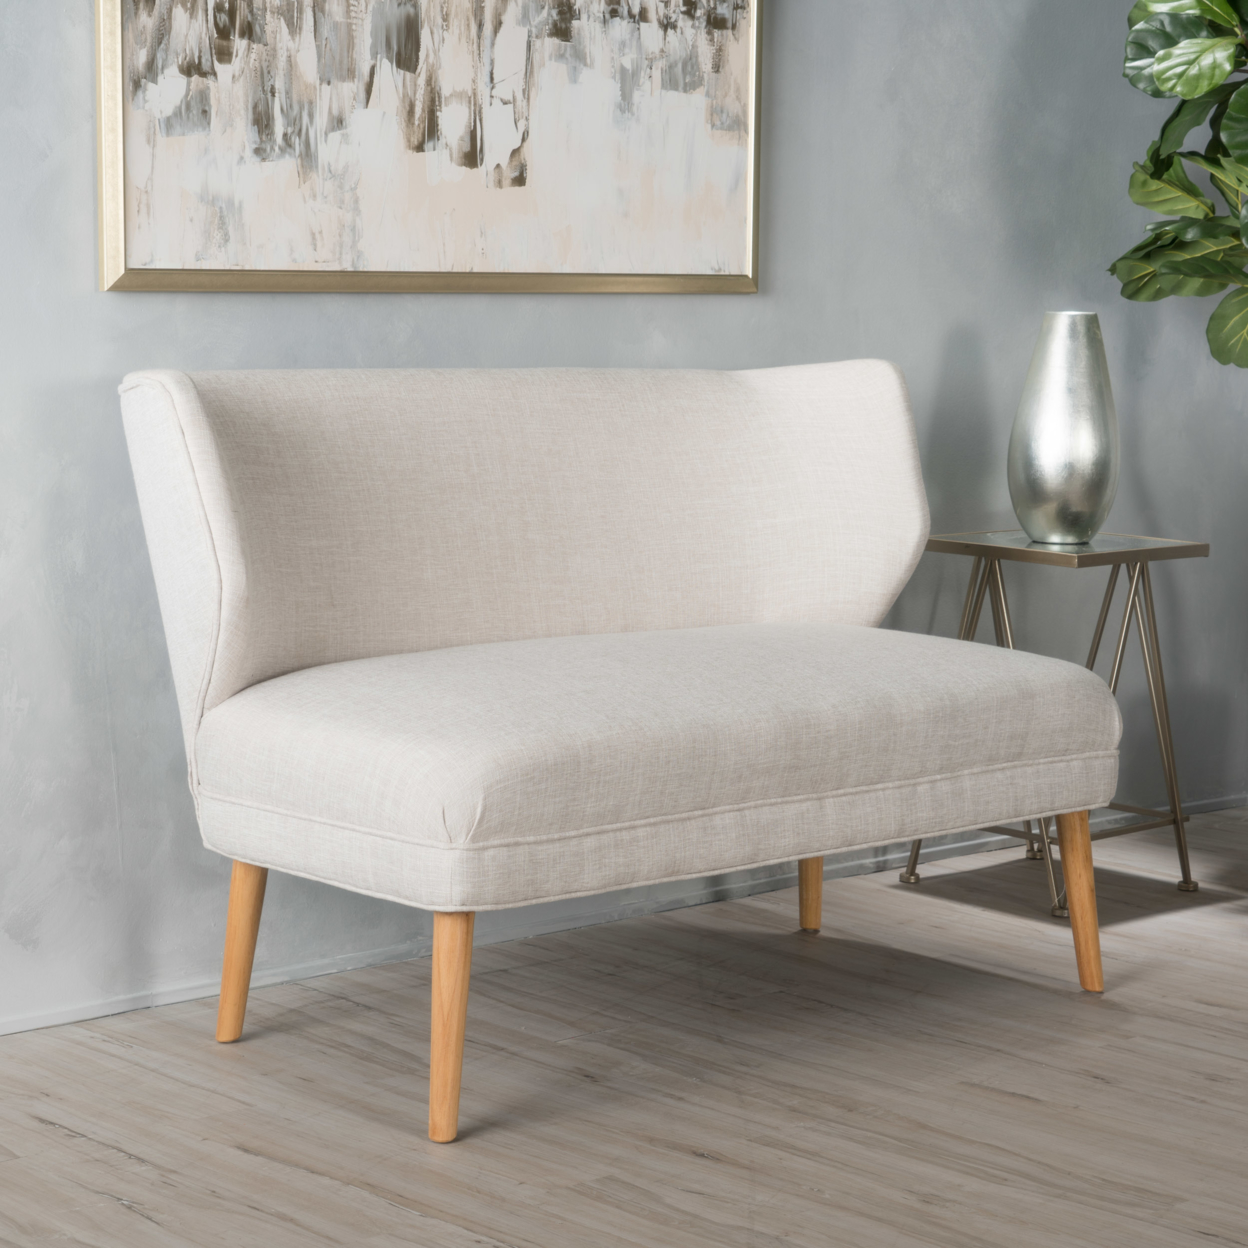 Dumont Mid Century Modern Fabric Loveseat Sofa Settee - Light Gray